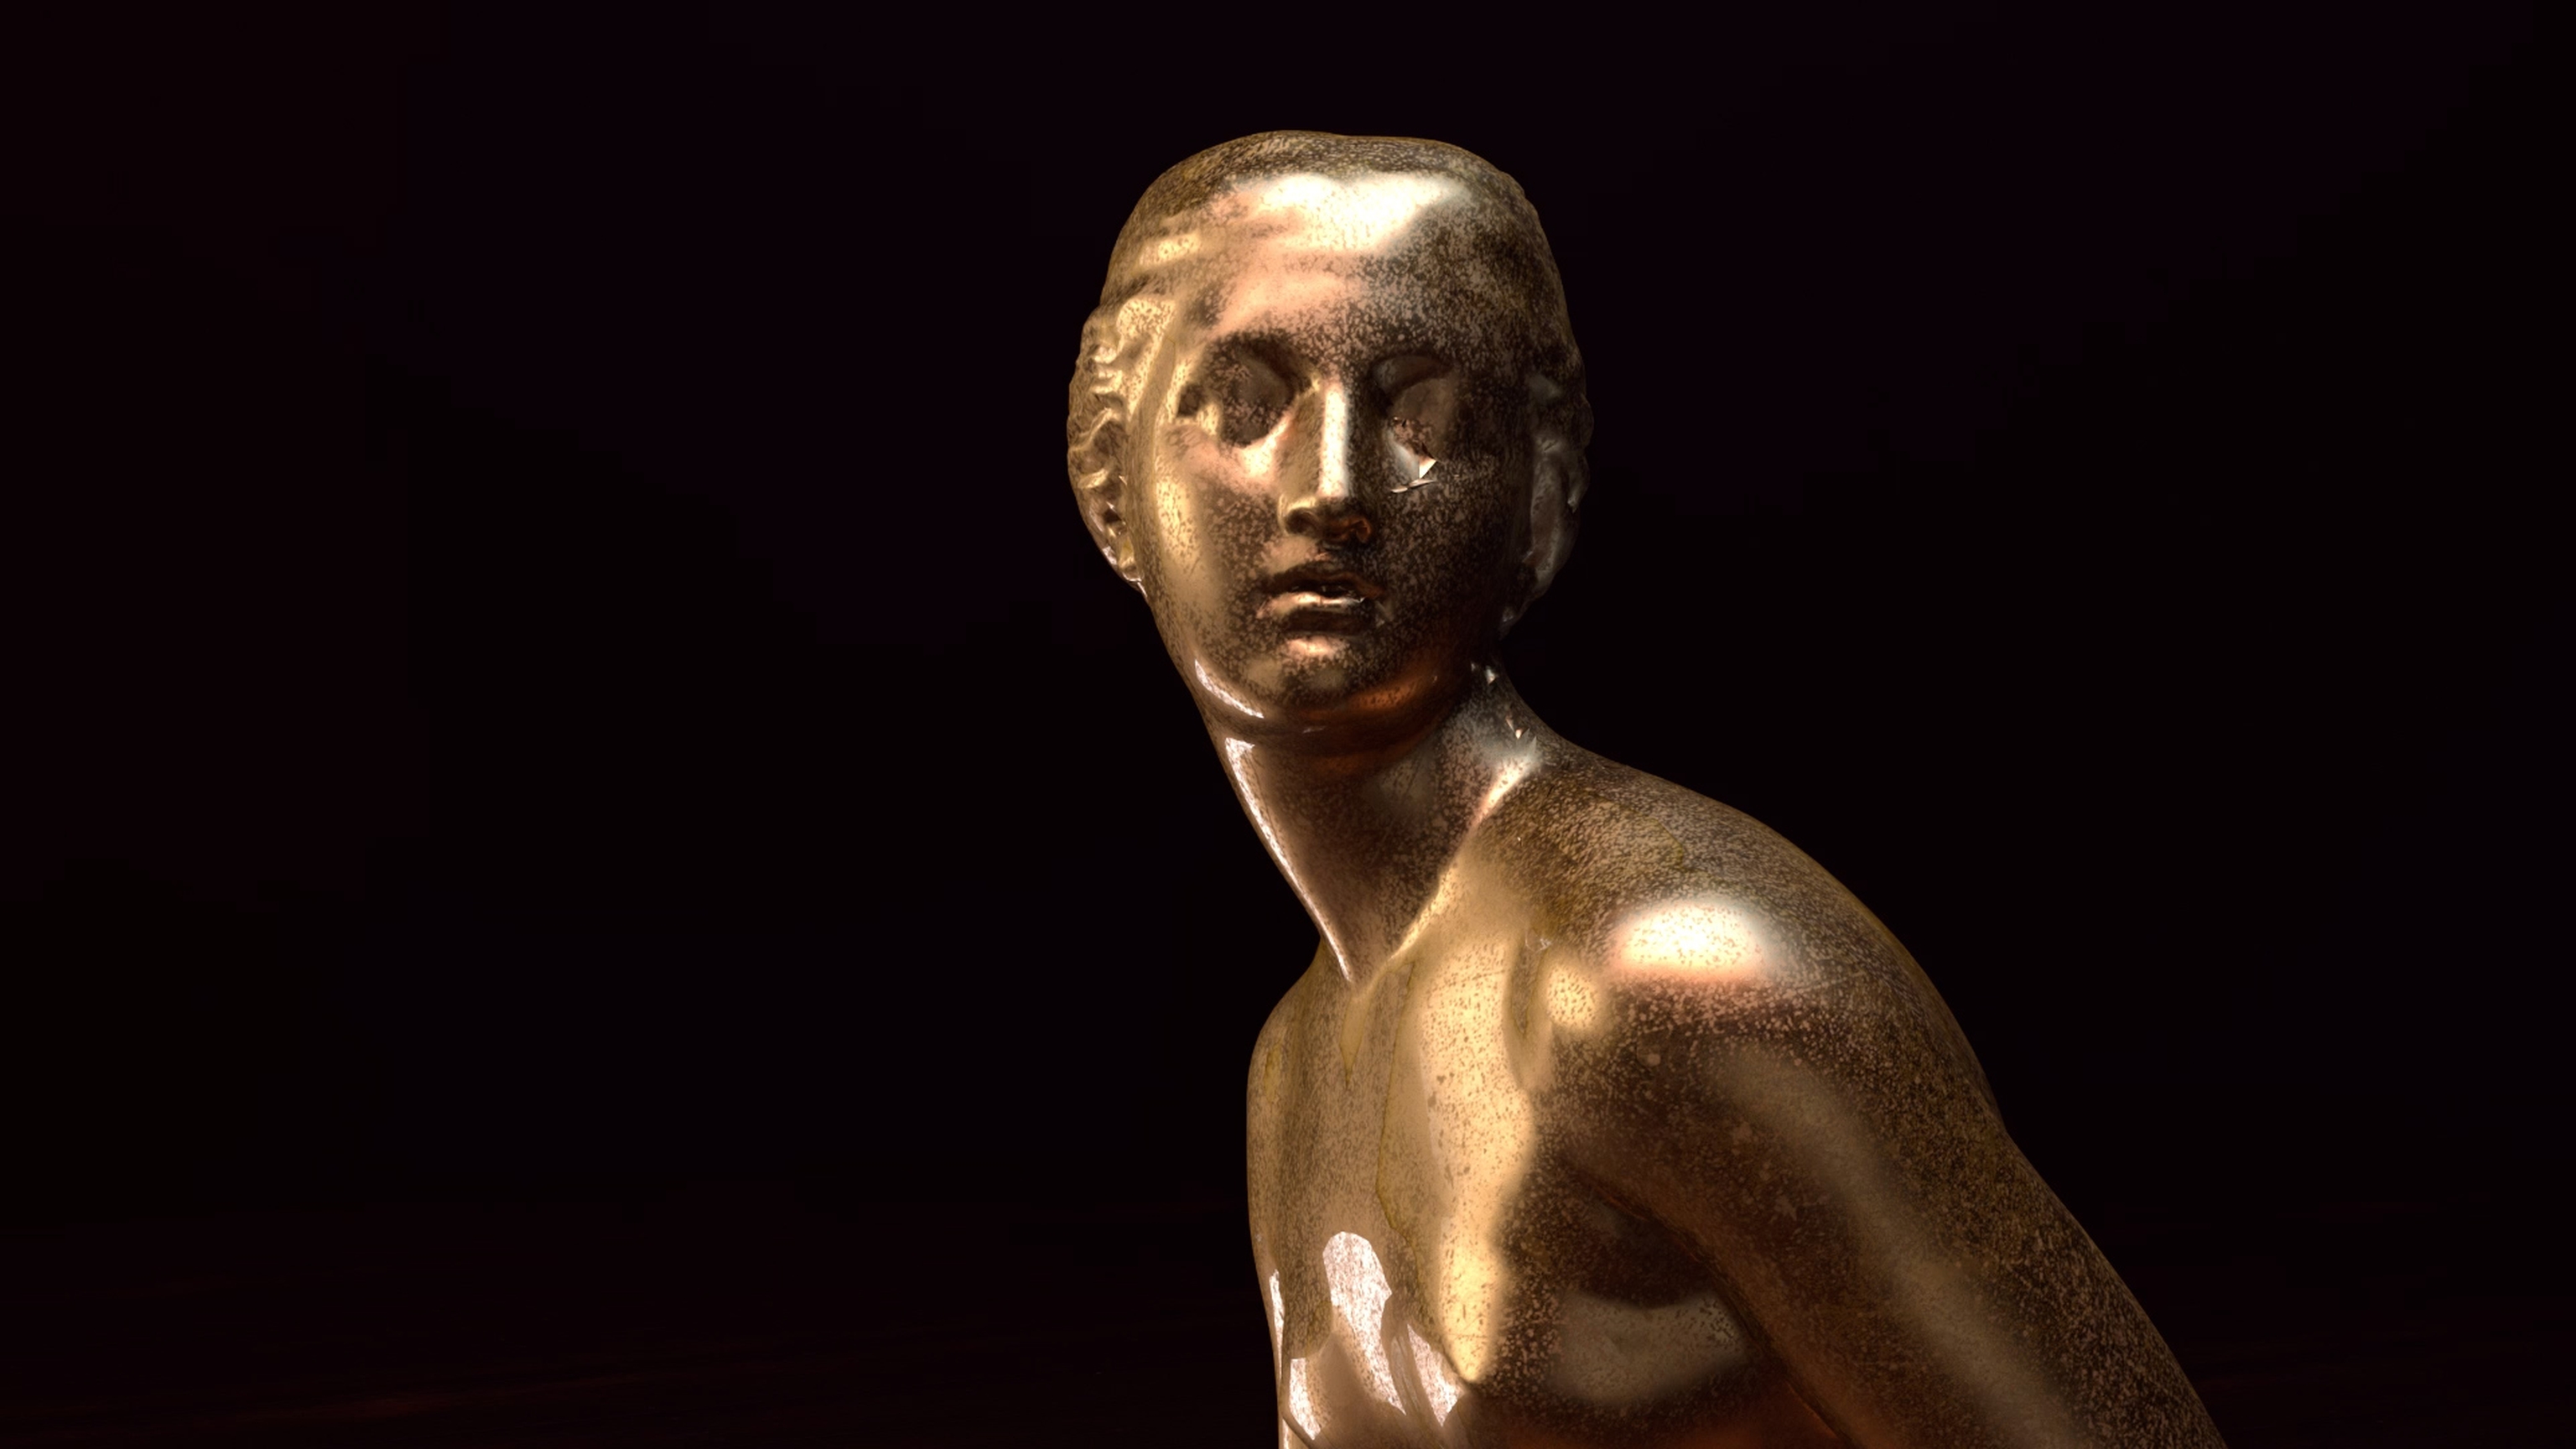 A bronze female statue